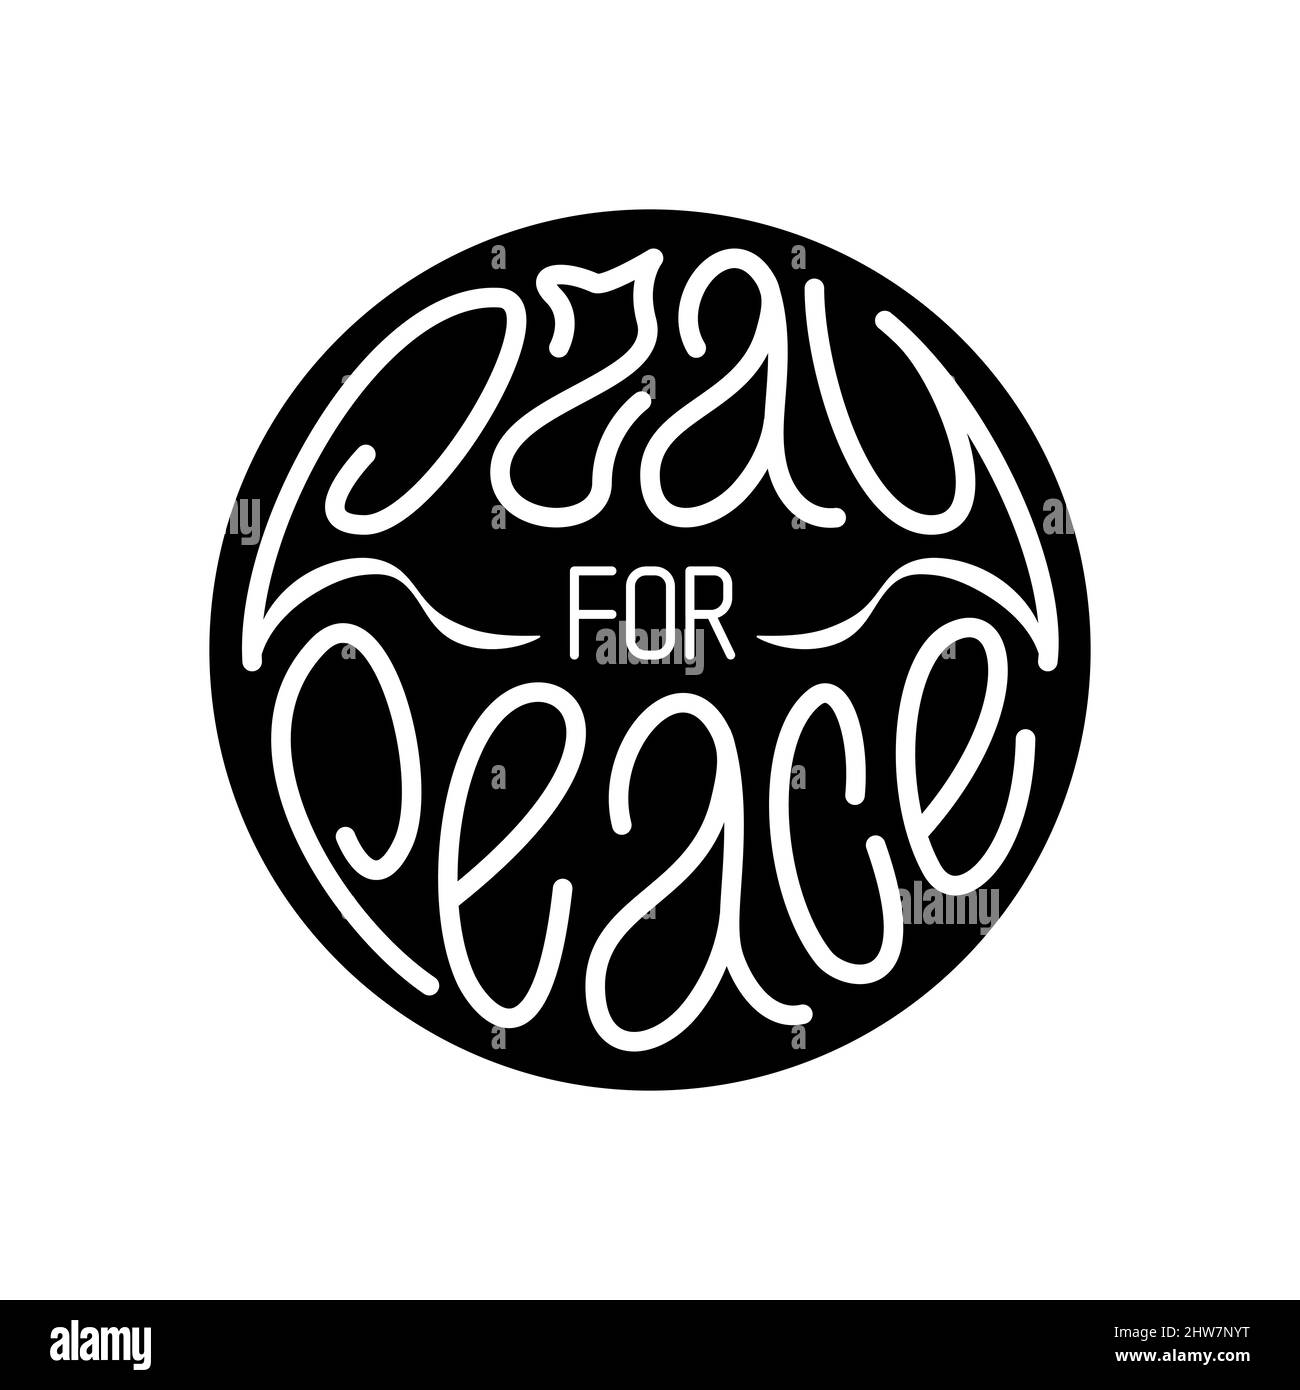 Priez pour la paix. Lettrage blanc dessiné à la main en forme de cercle noir, rallye antiguerre, mouvement pacifique. Illustration vectorielle Illustration de Vecteur